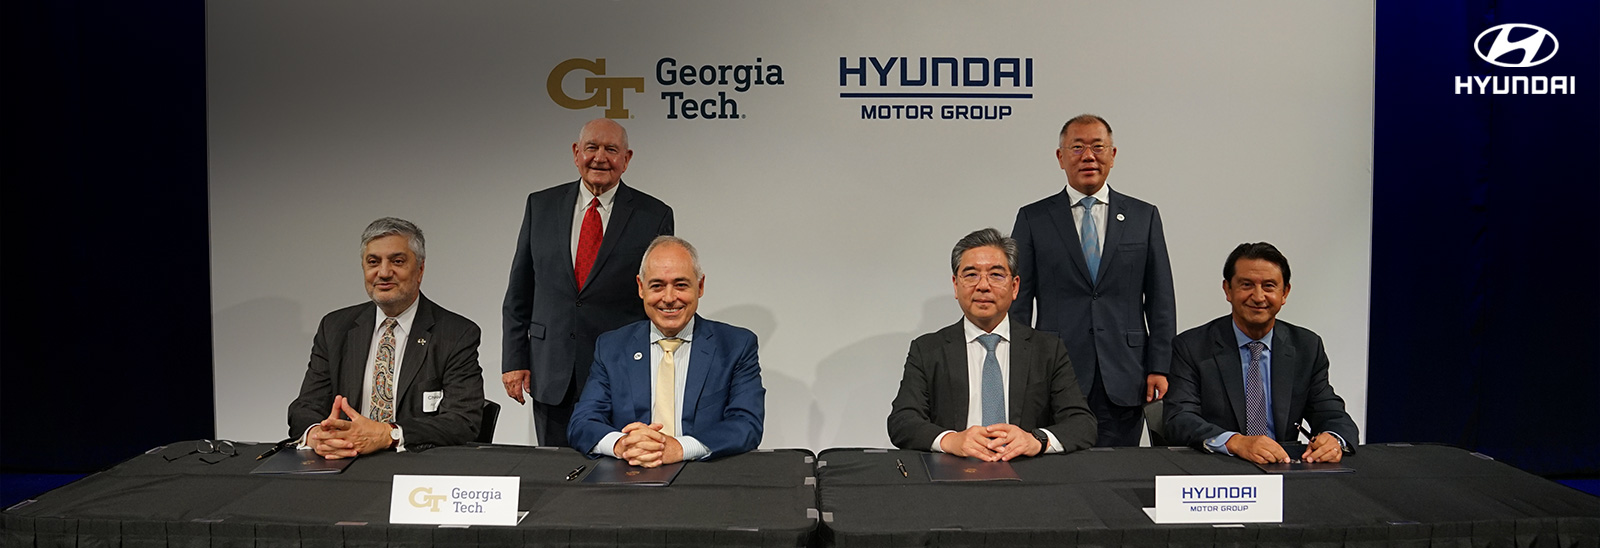 Hyundai Motor, Movilidad Sustentable, Economía de Hidrógeno, Georgia Tech, Vehículos Eléctricos